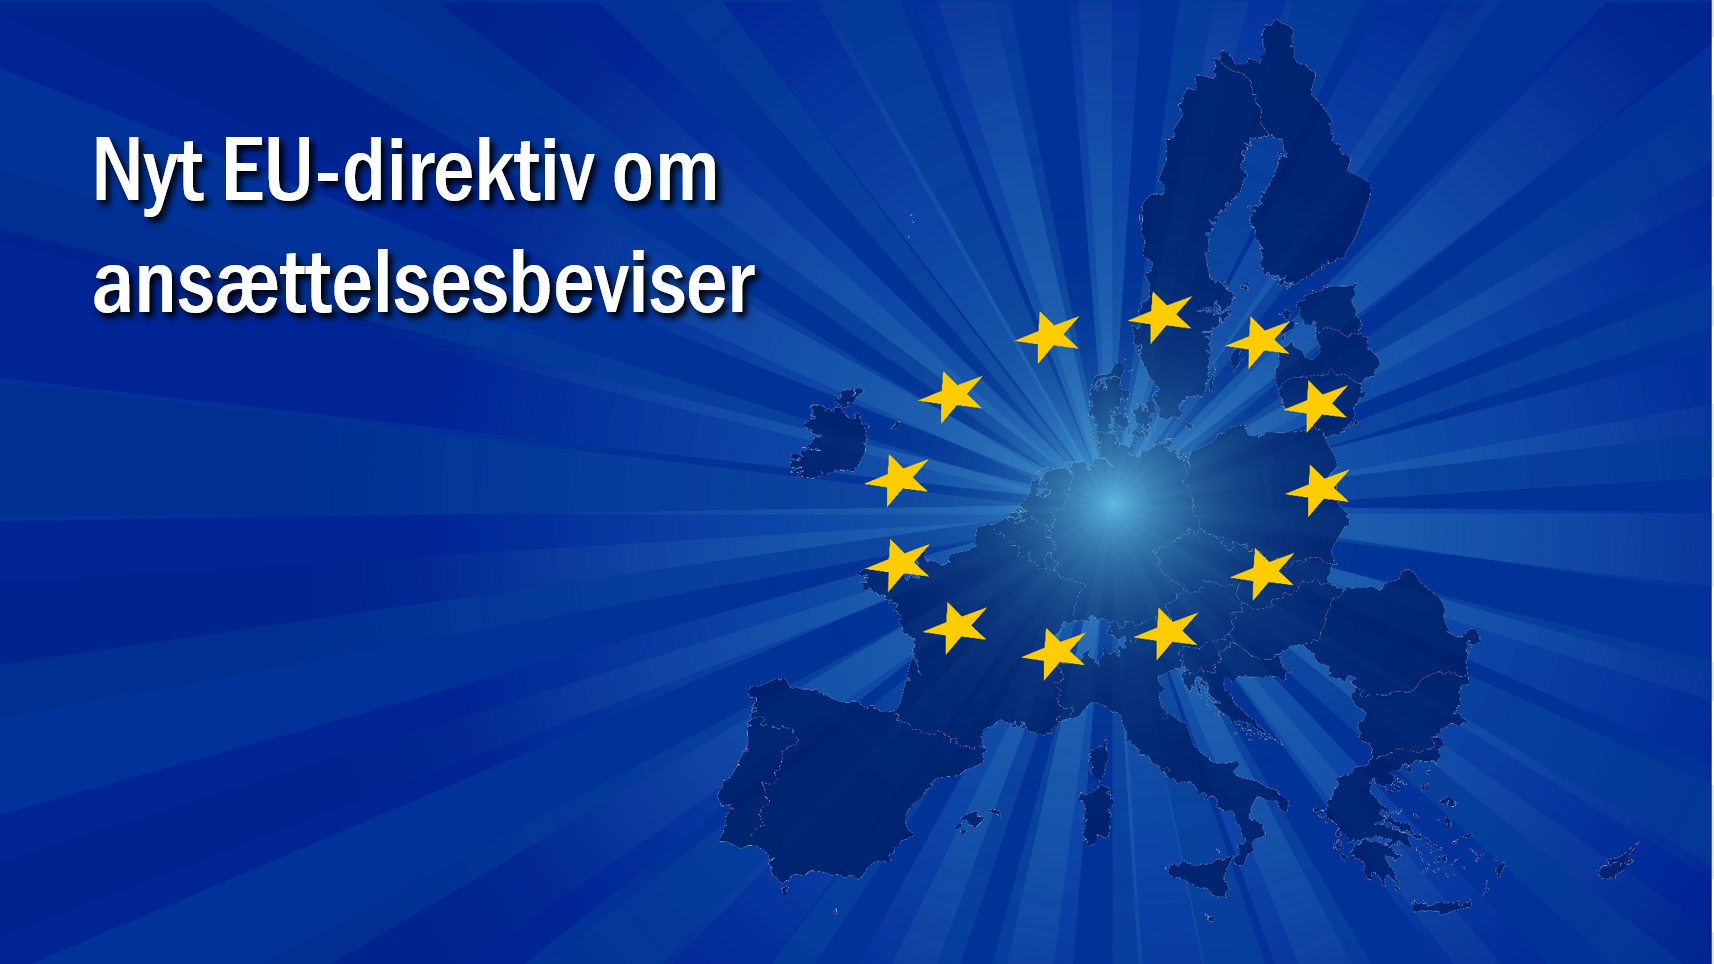 nyhed_Nyt EU-direktiv om ansættelsesbeviser